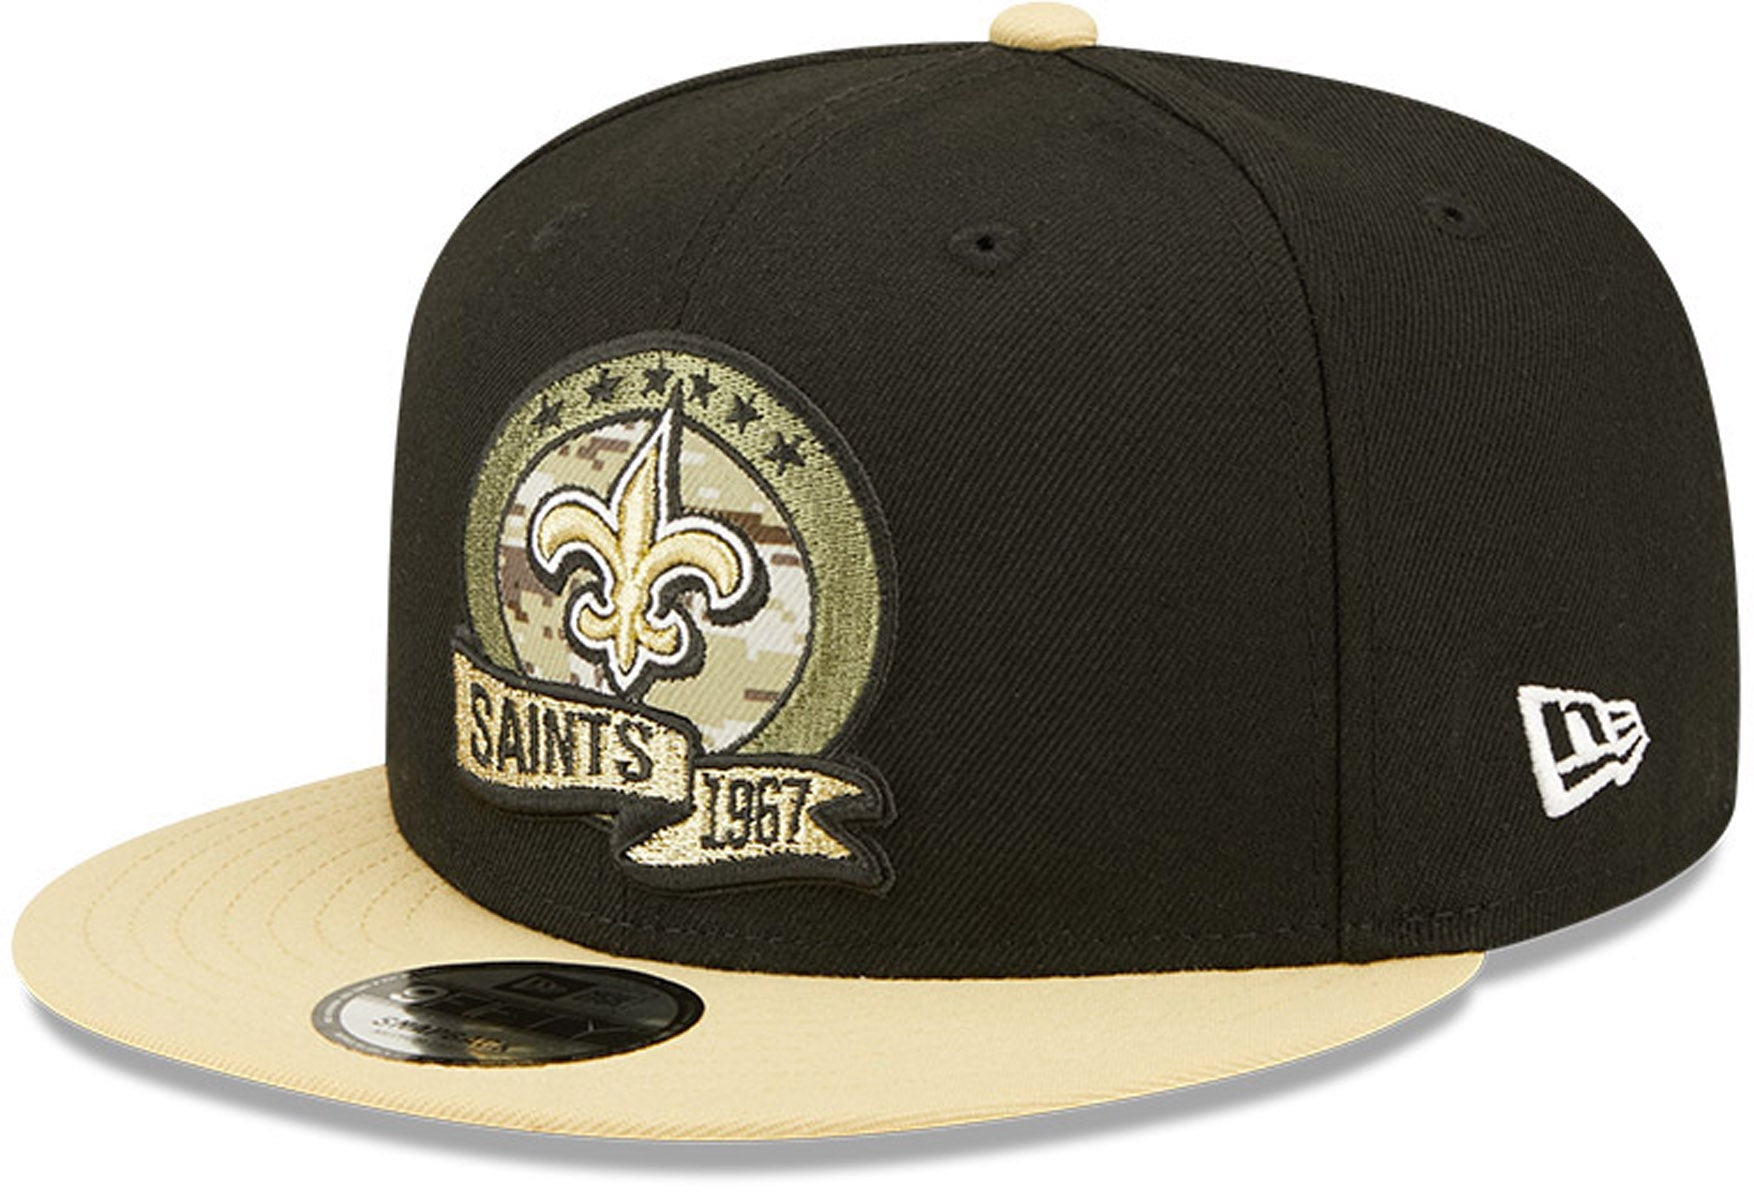 New Era NFL New Orleans Saints 9Fifty - Black